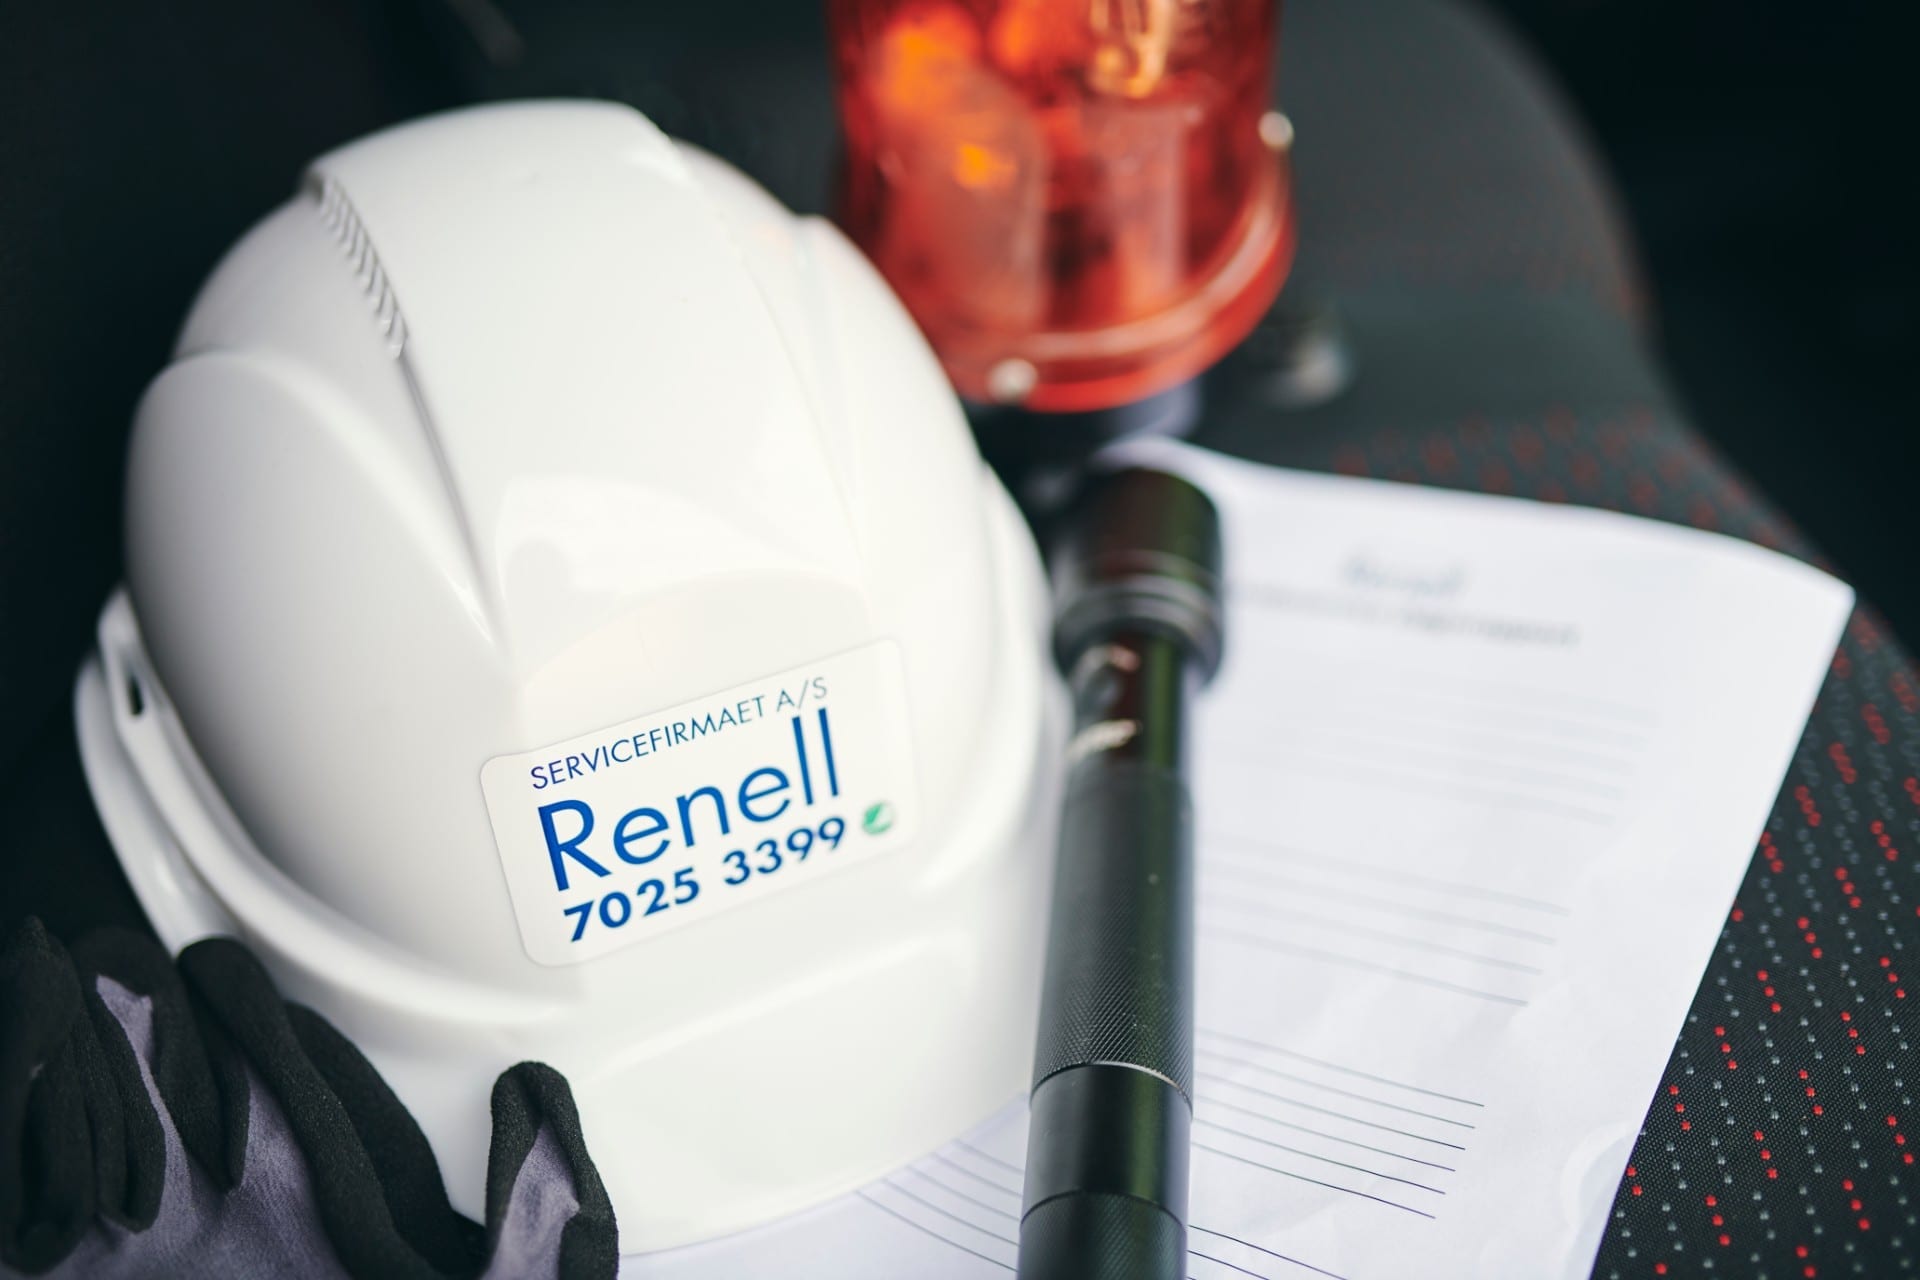 Renell-hjelm og udstyr til skadeservice